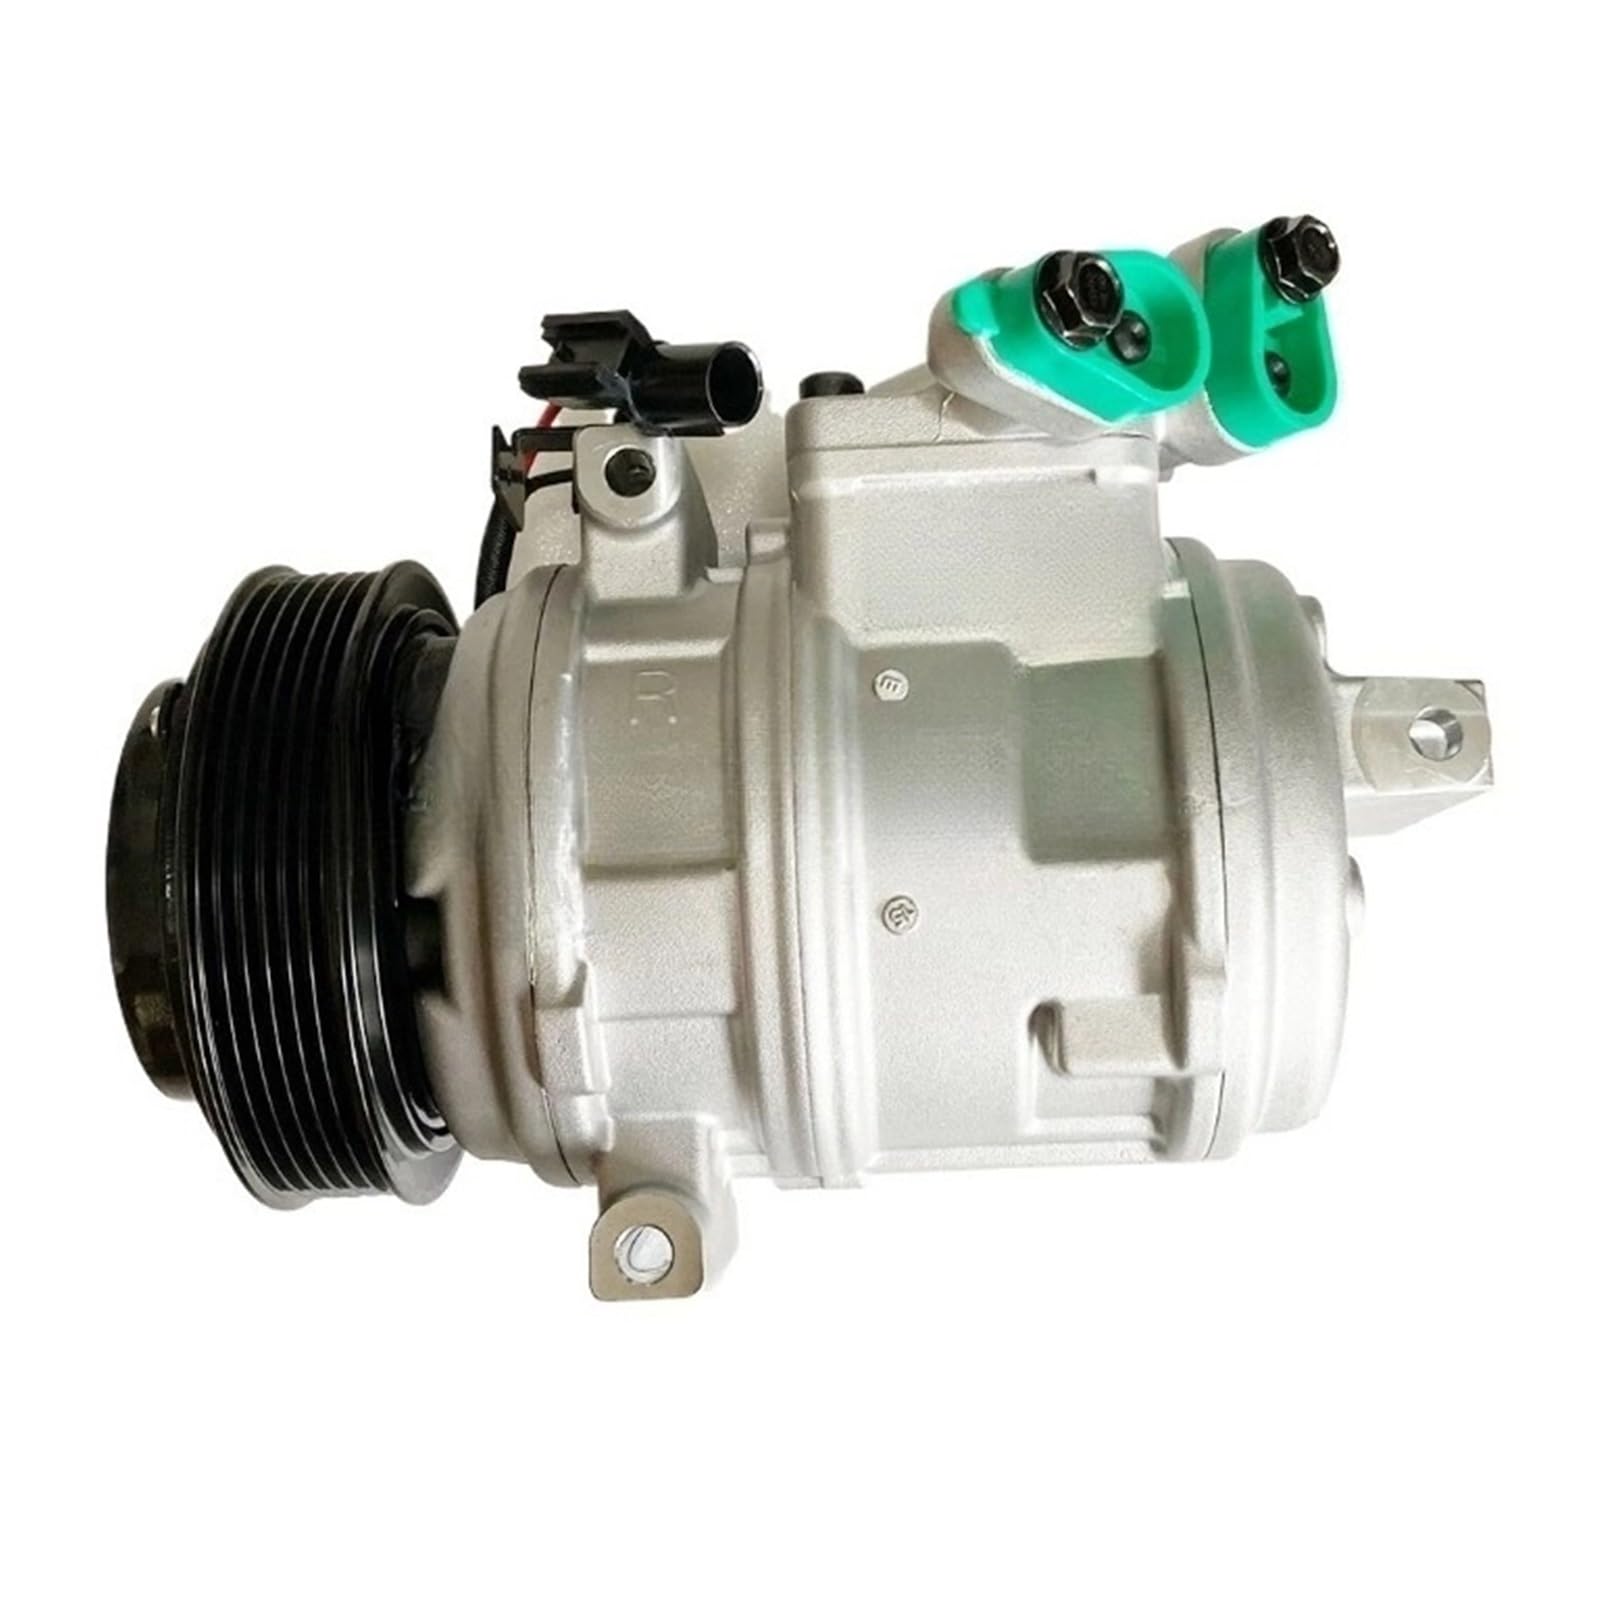 AC Klimaanlage Kompressor Pumpe 10PA17C Pulley Kupplung Kompatibel for KIA -Carnival R -Sendona 2,2 L 97701-4D700 977014D700 von OWYTNRCJ